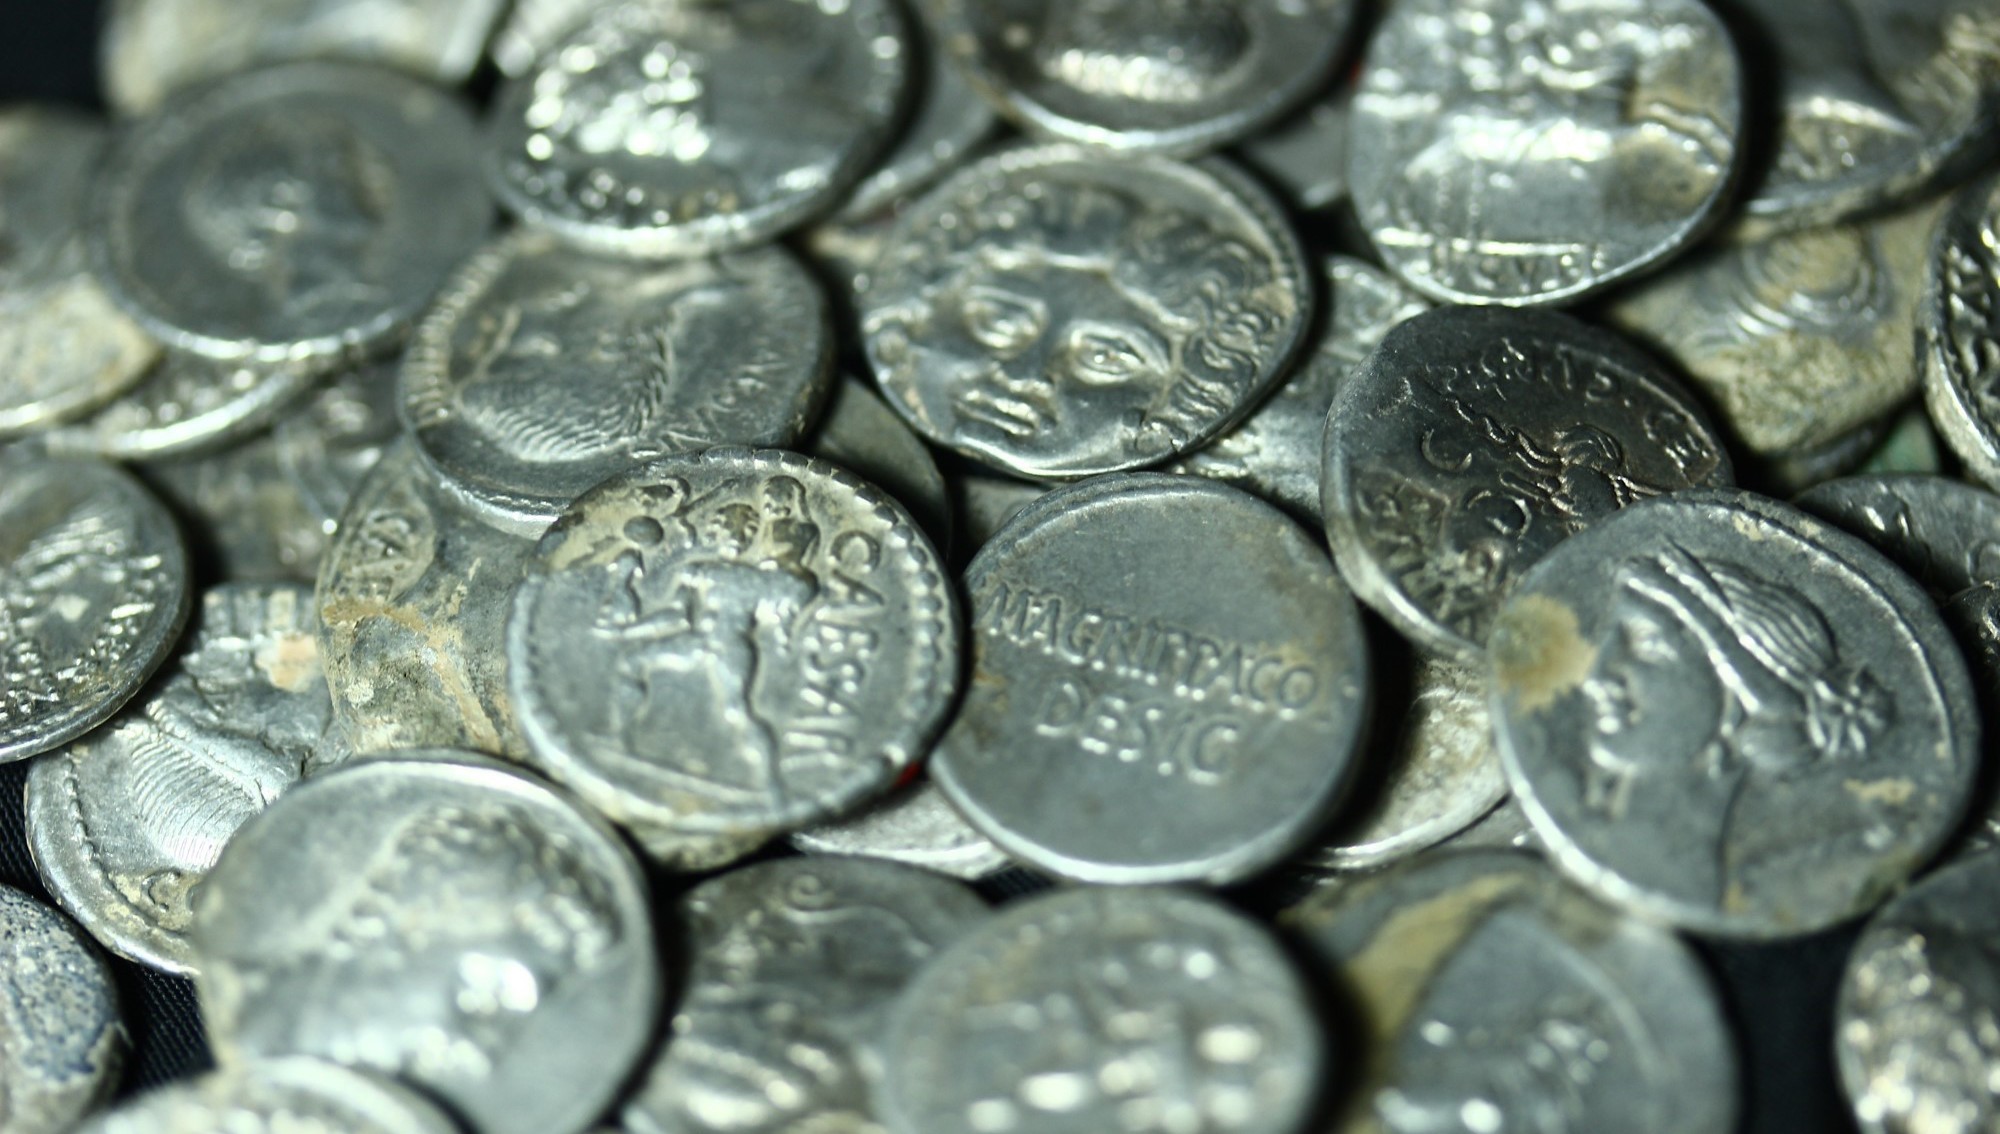 Archäologen in der Türkei haben in einem Krug 651 Silbermünzen entdeckt.